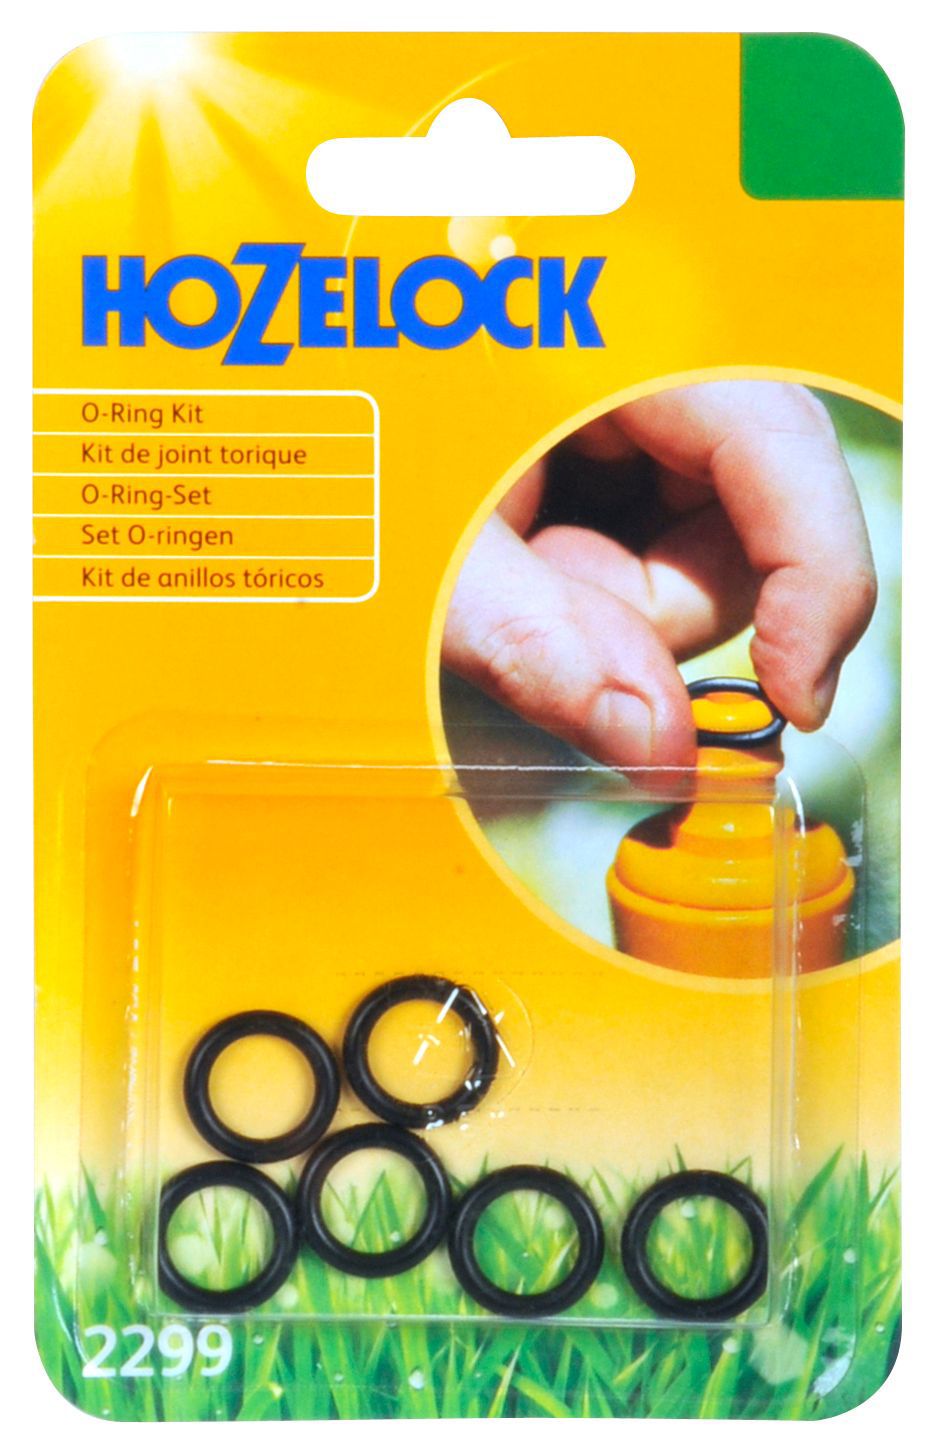 Hozelock Seal repair kit